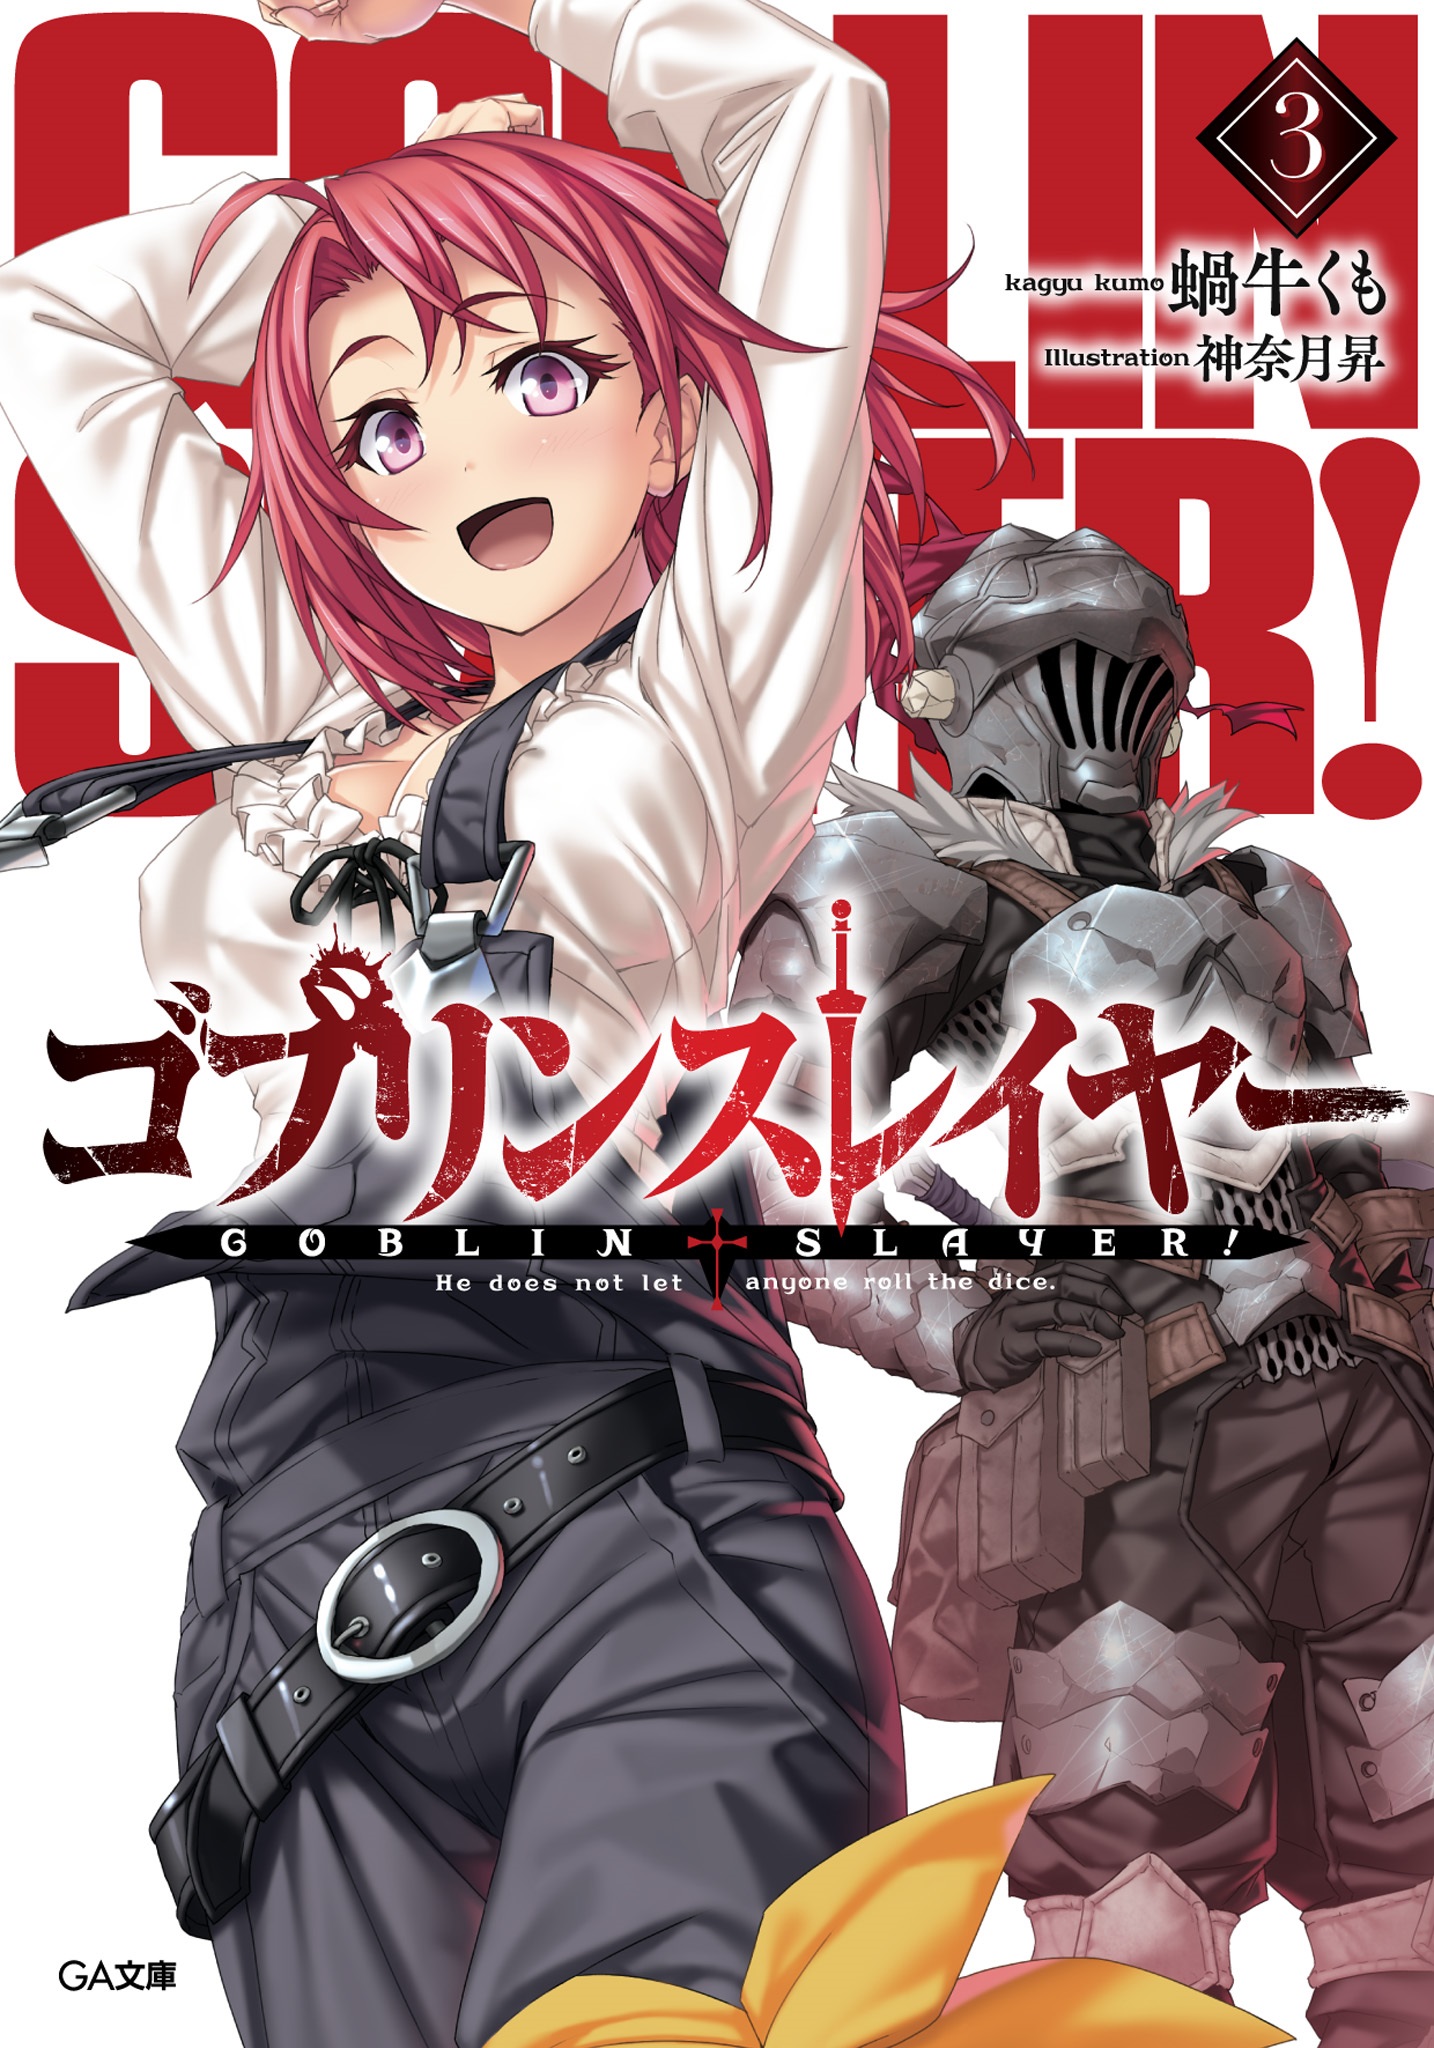 Volume 3 do segundo ano da Light Novel